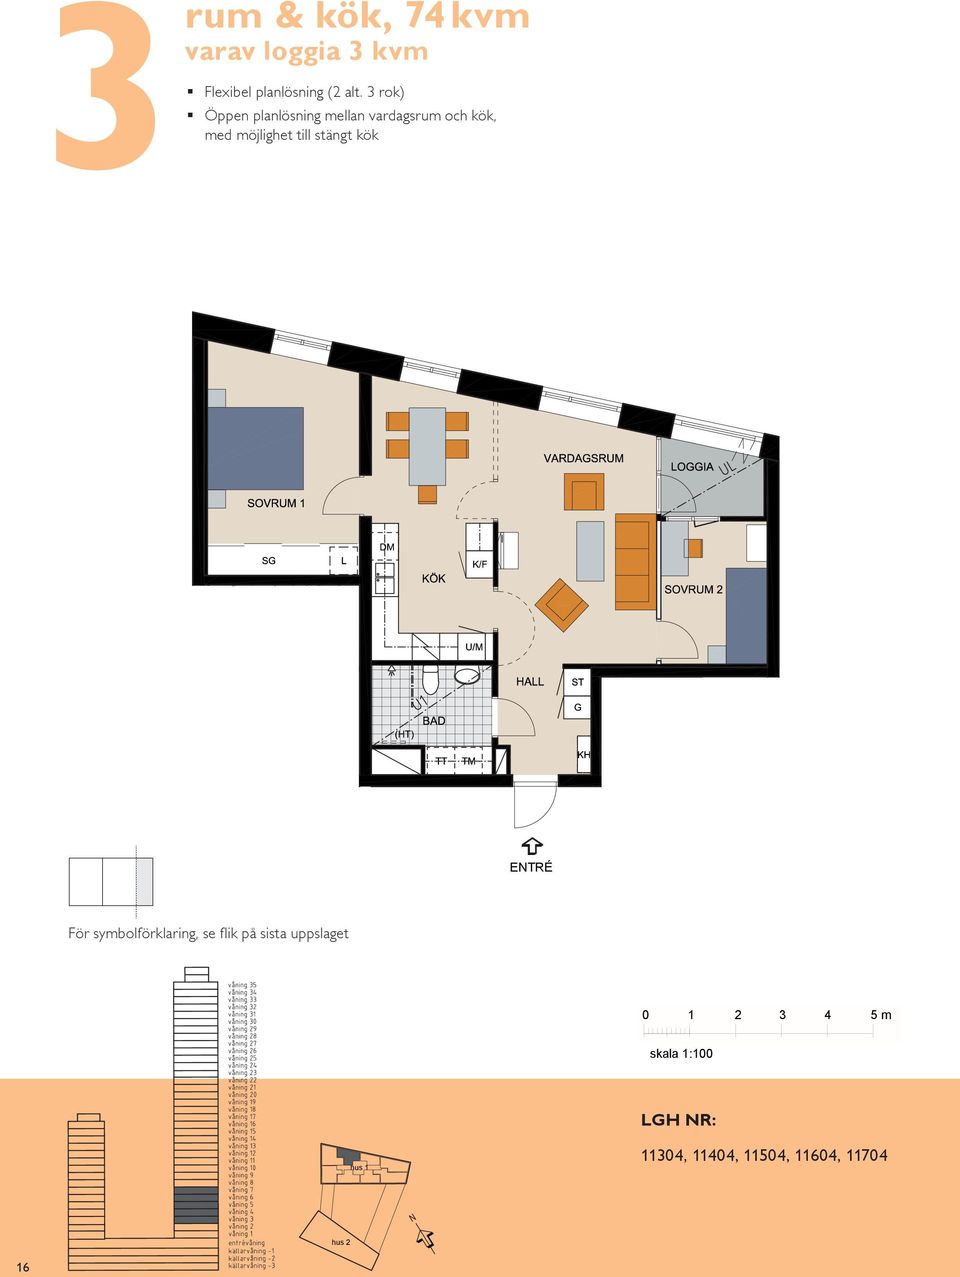 plats för två Balkong mot rum & kök, 7 m² varav loggia m² Flexibel planlösning ( alt.